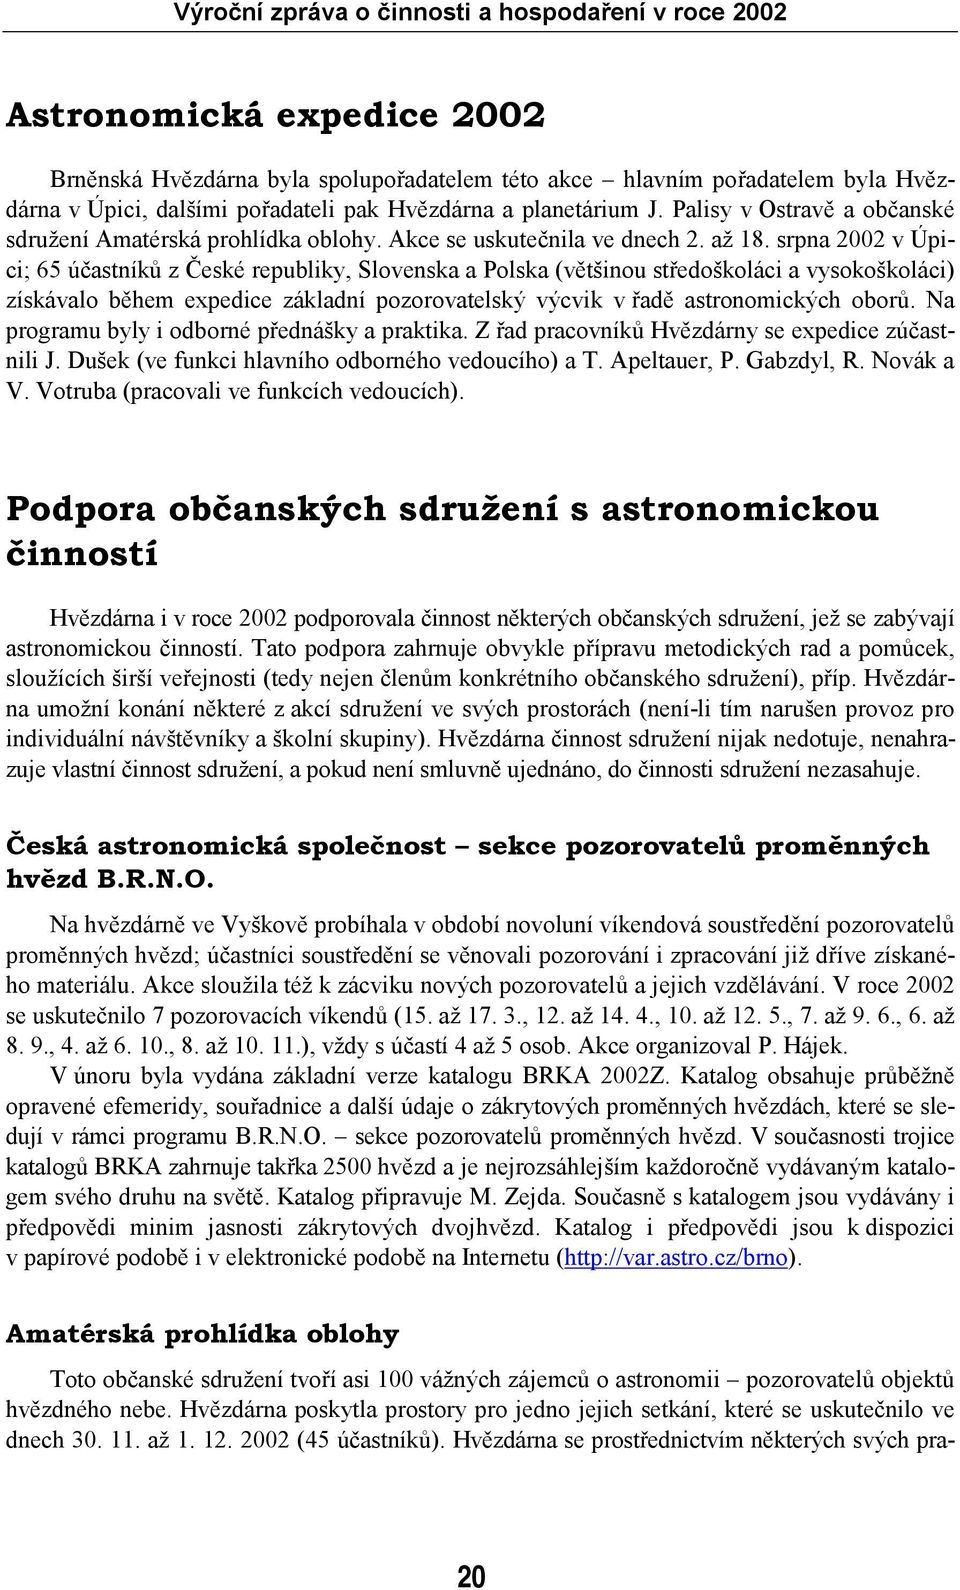 srpna 2002 v Úpici; 65 účastníků z České republiky, Slovenska a Polska (většinou středoškoláci a vysokoškoláci) získávalo během expedice základní pozorovatelský výcvik v řadě astronomických oborů.